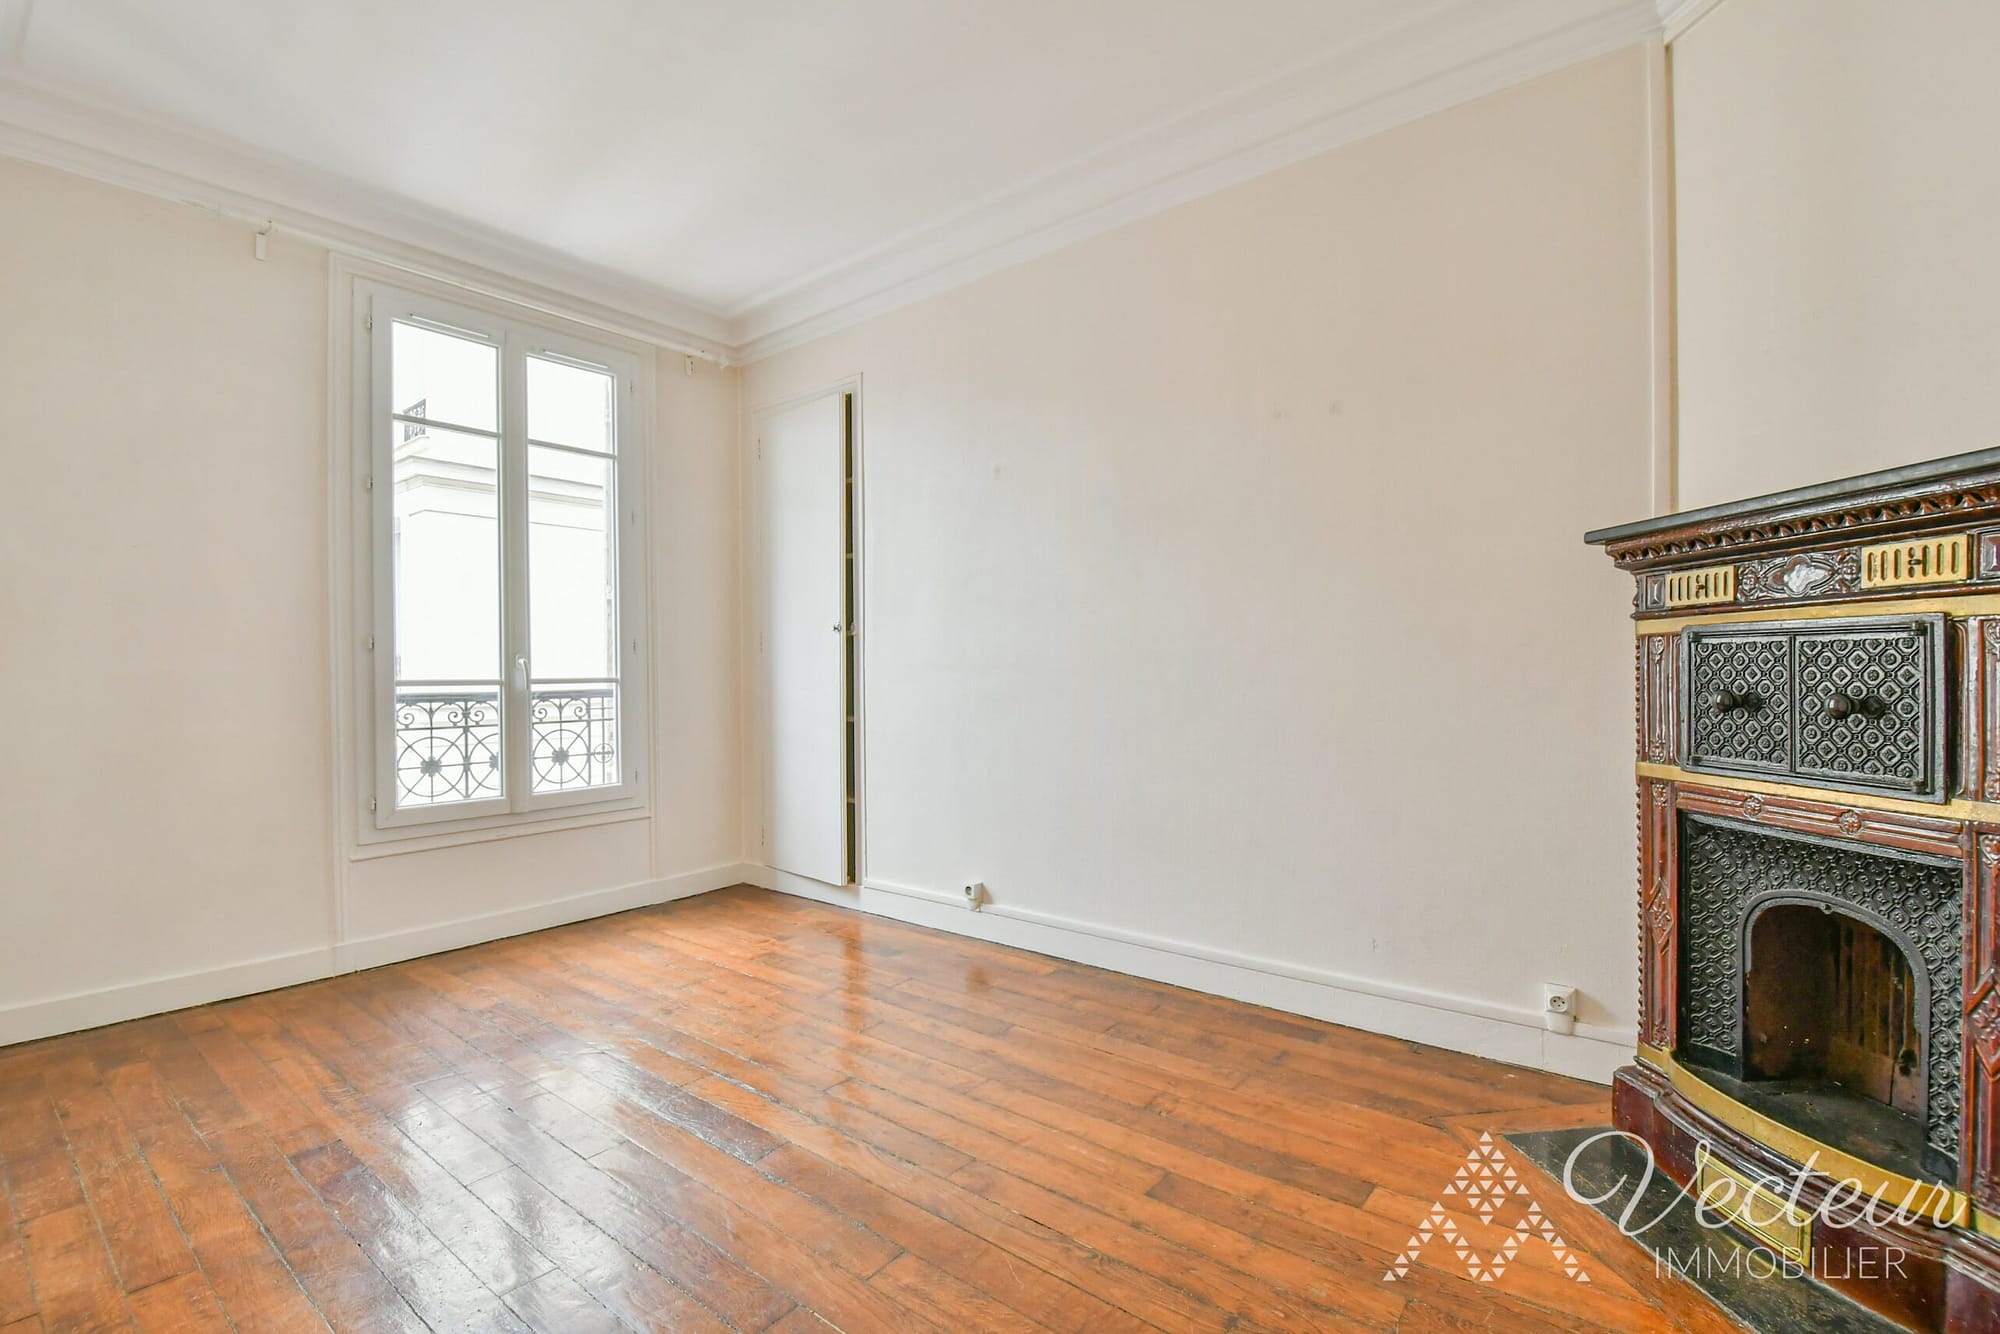 Location appartement Paris 15 Cambronne - 2 pièces 39 m2